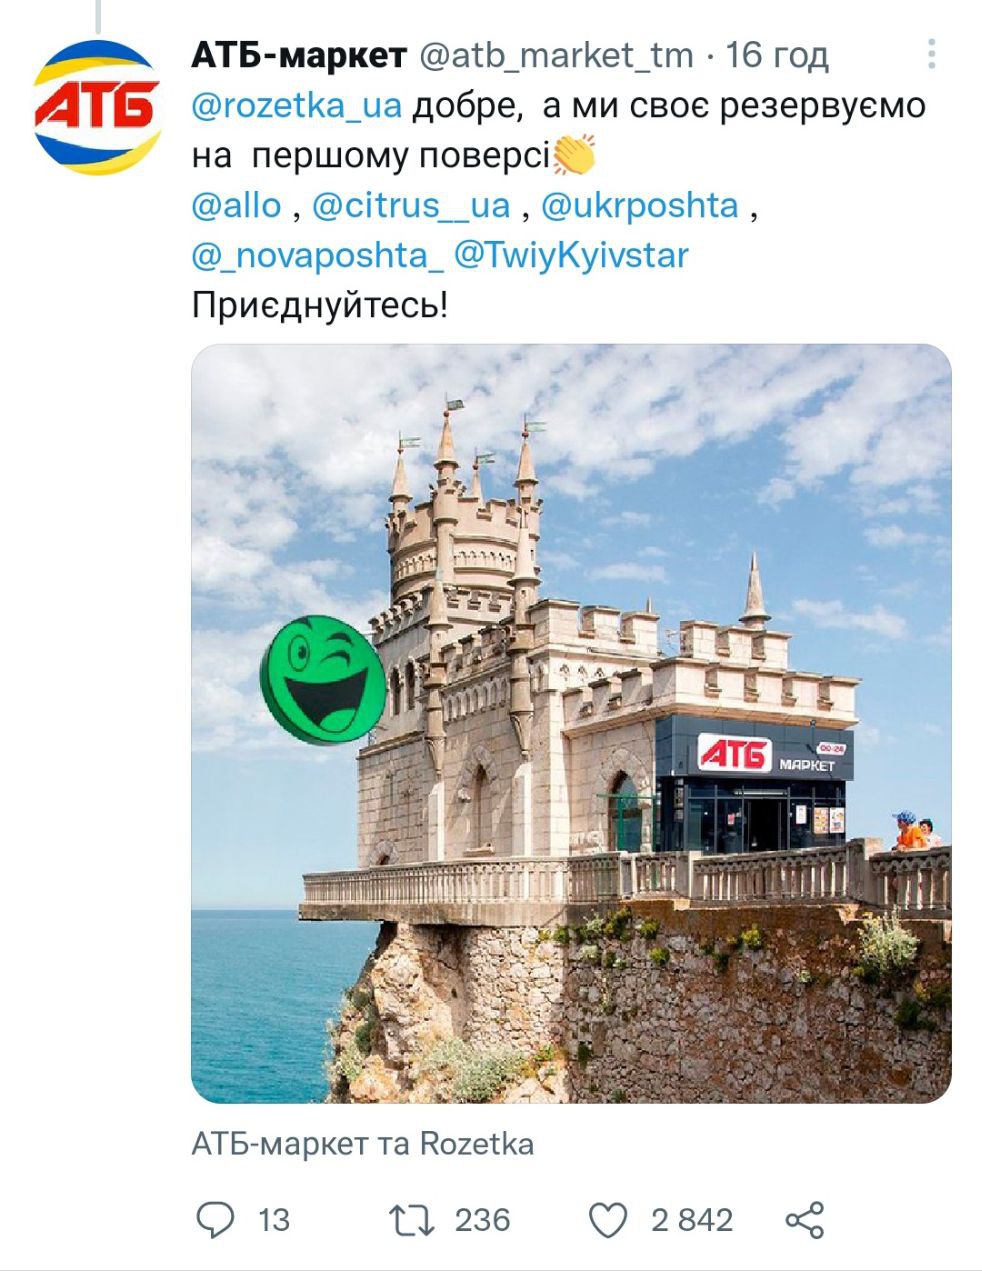 Українські бренди та блогери жартують про повернення Криму – підбірка твітів